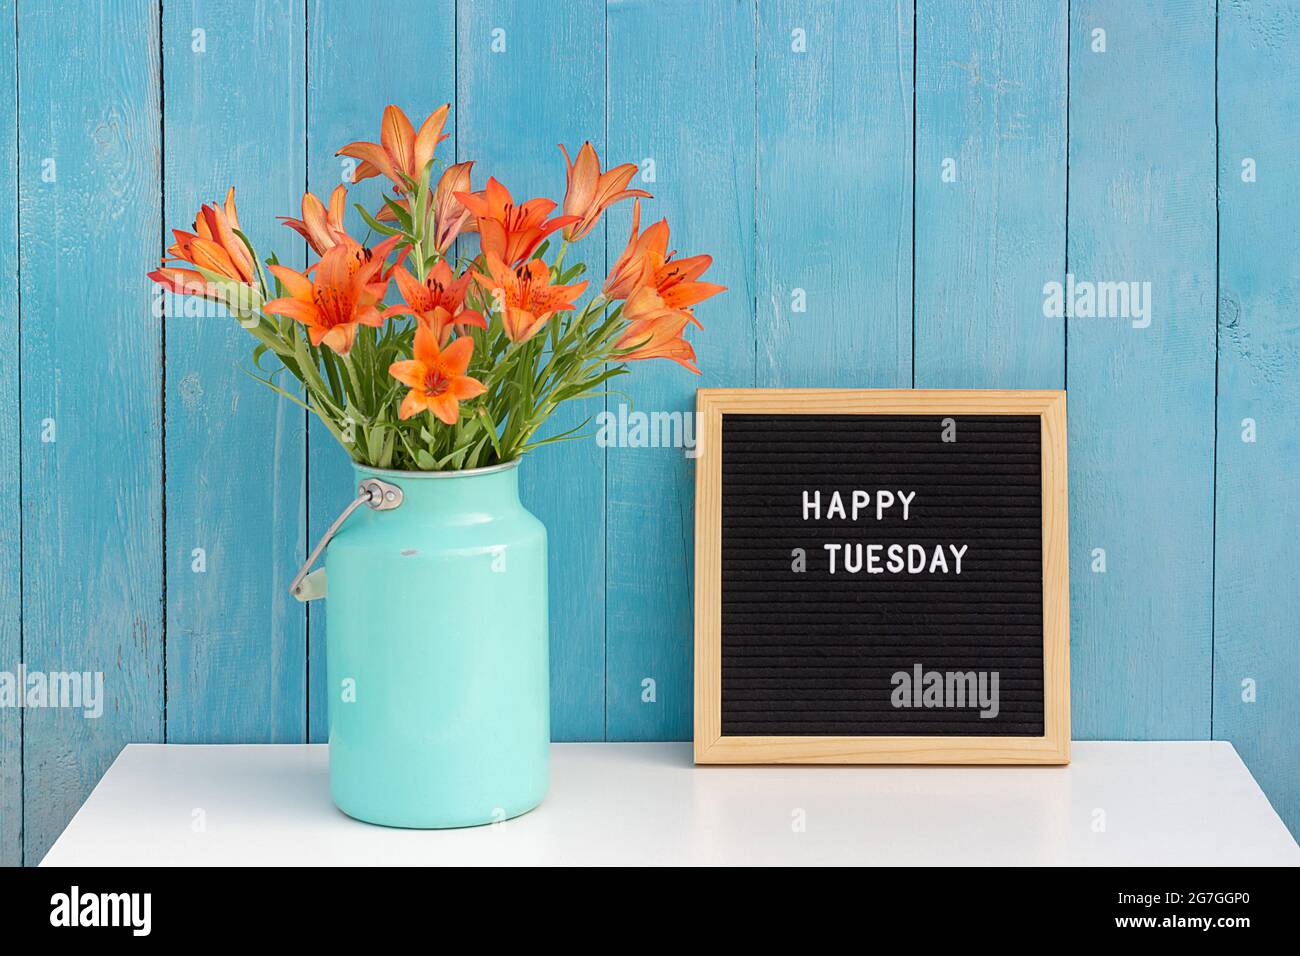 Happy Tuesday mots sur le tableau noir de lettres et bouquet de fleurs orange sur la table contre le mur en bois bleu. Concept Bonjour mardi. Banque D'Images